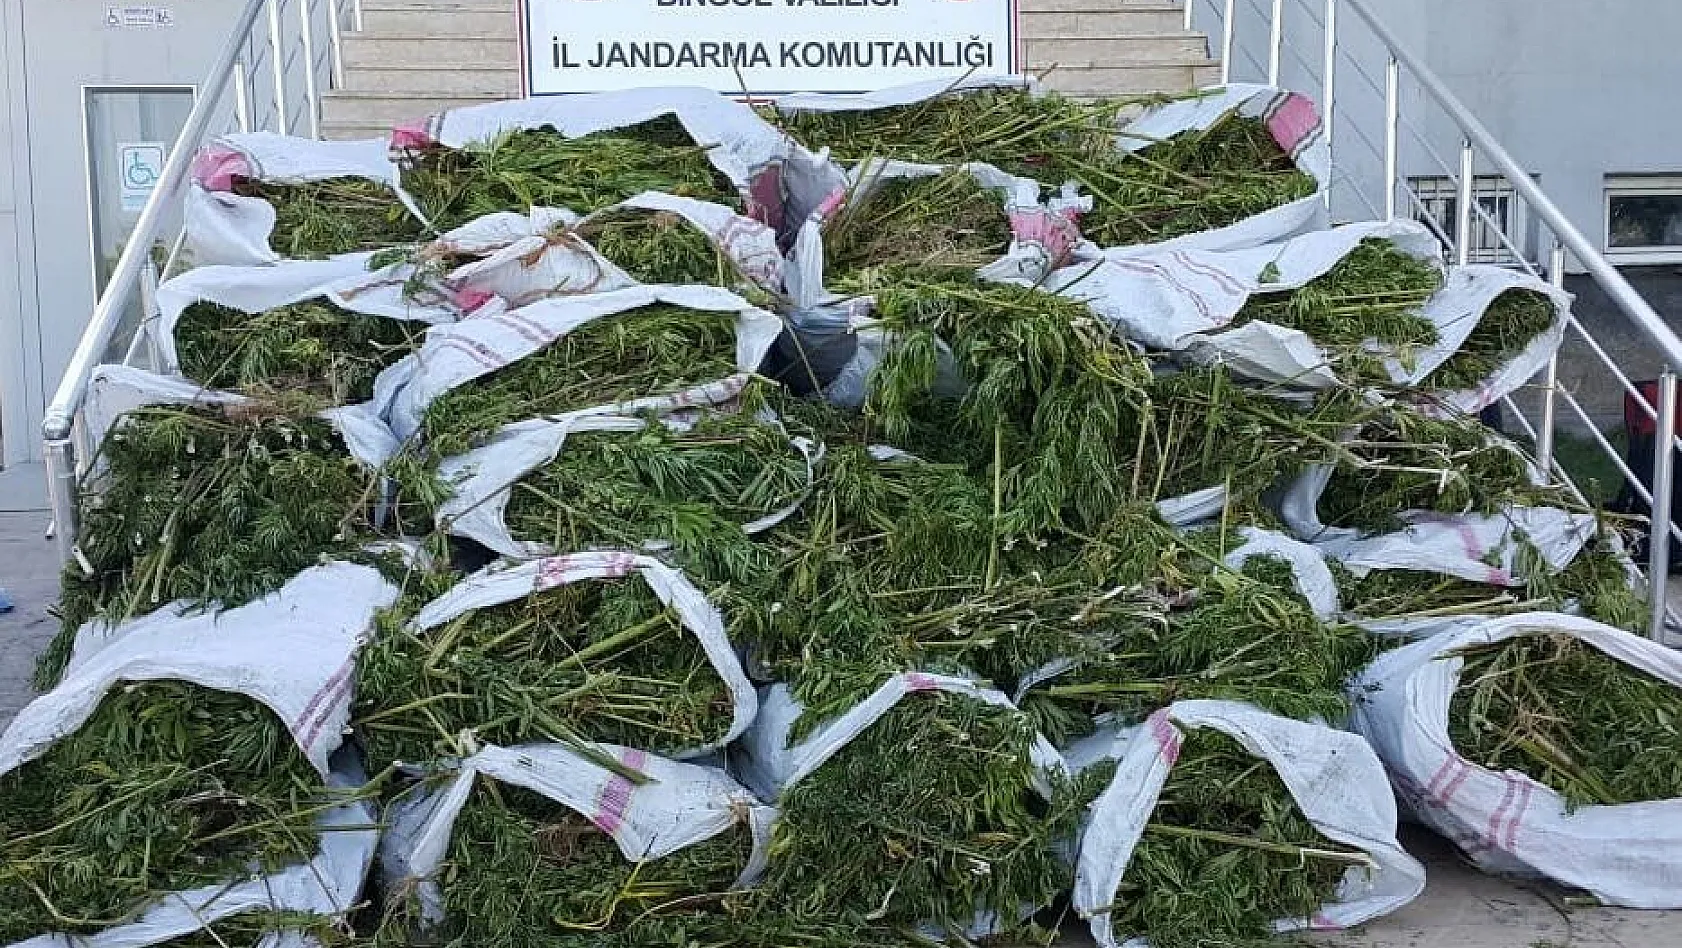 Bingöl'de 700 kilo esrar, 40 bin kök kenevir ele geçirildi 